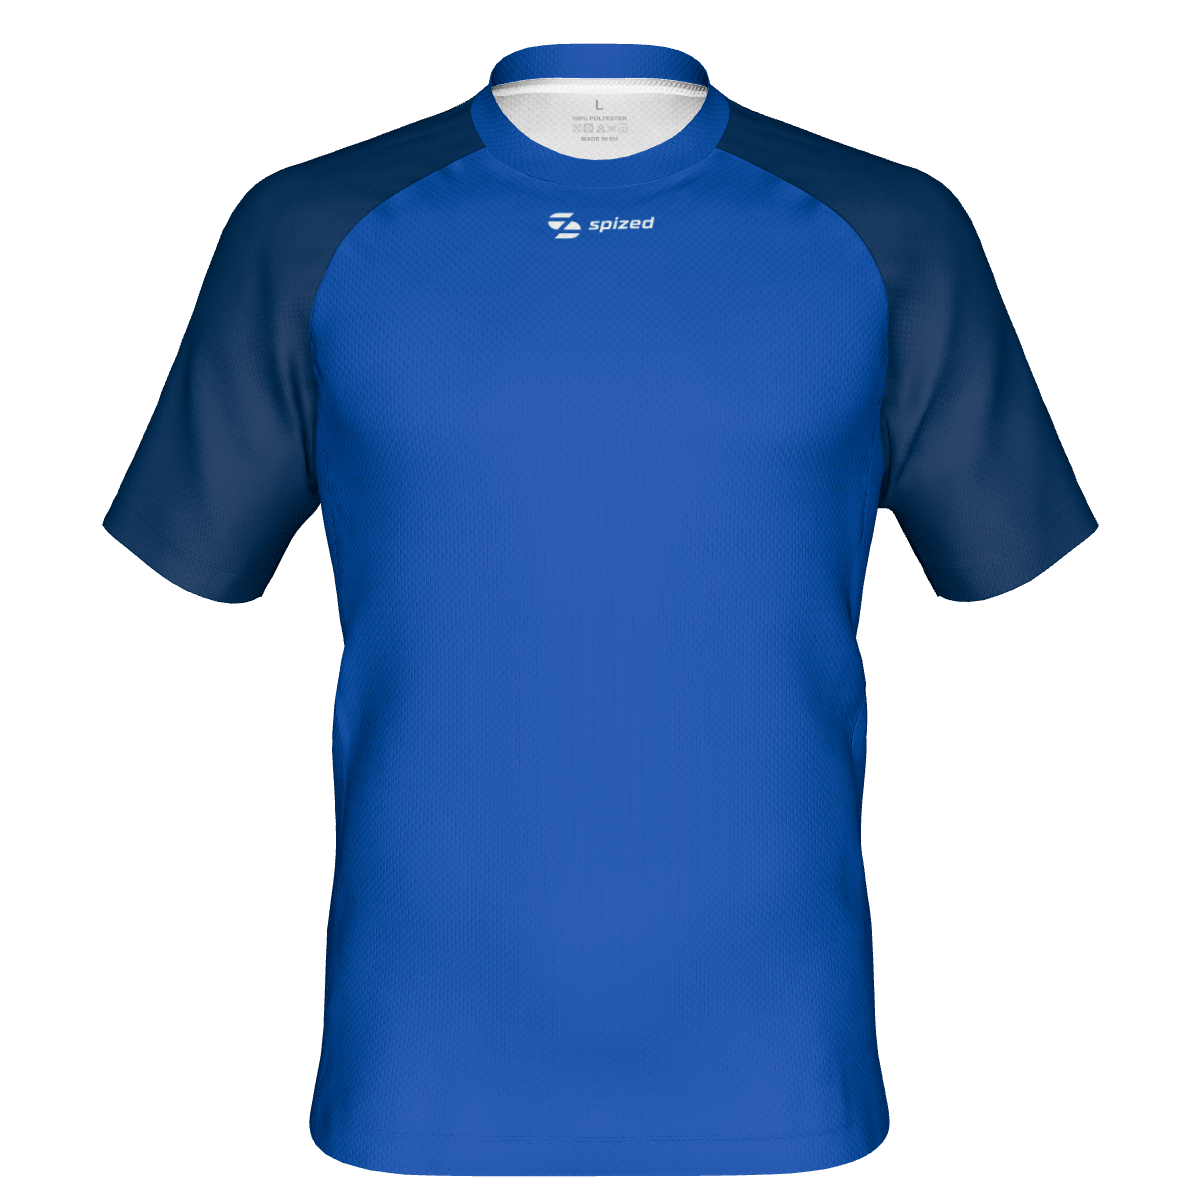 Viborg men's handball jersey